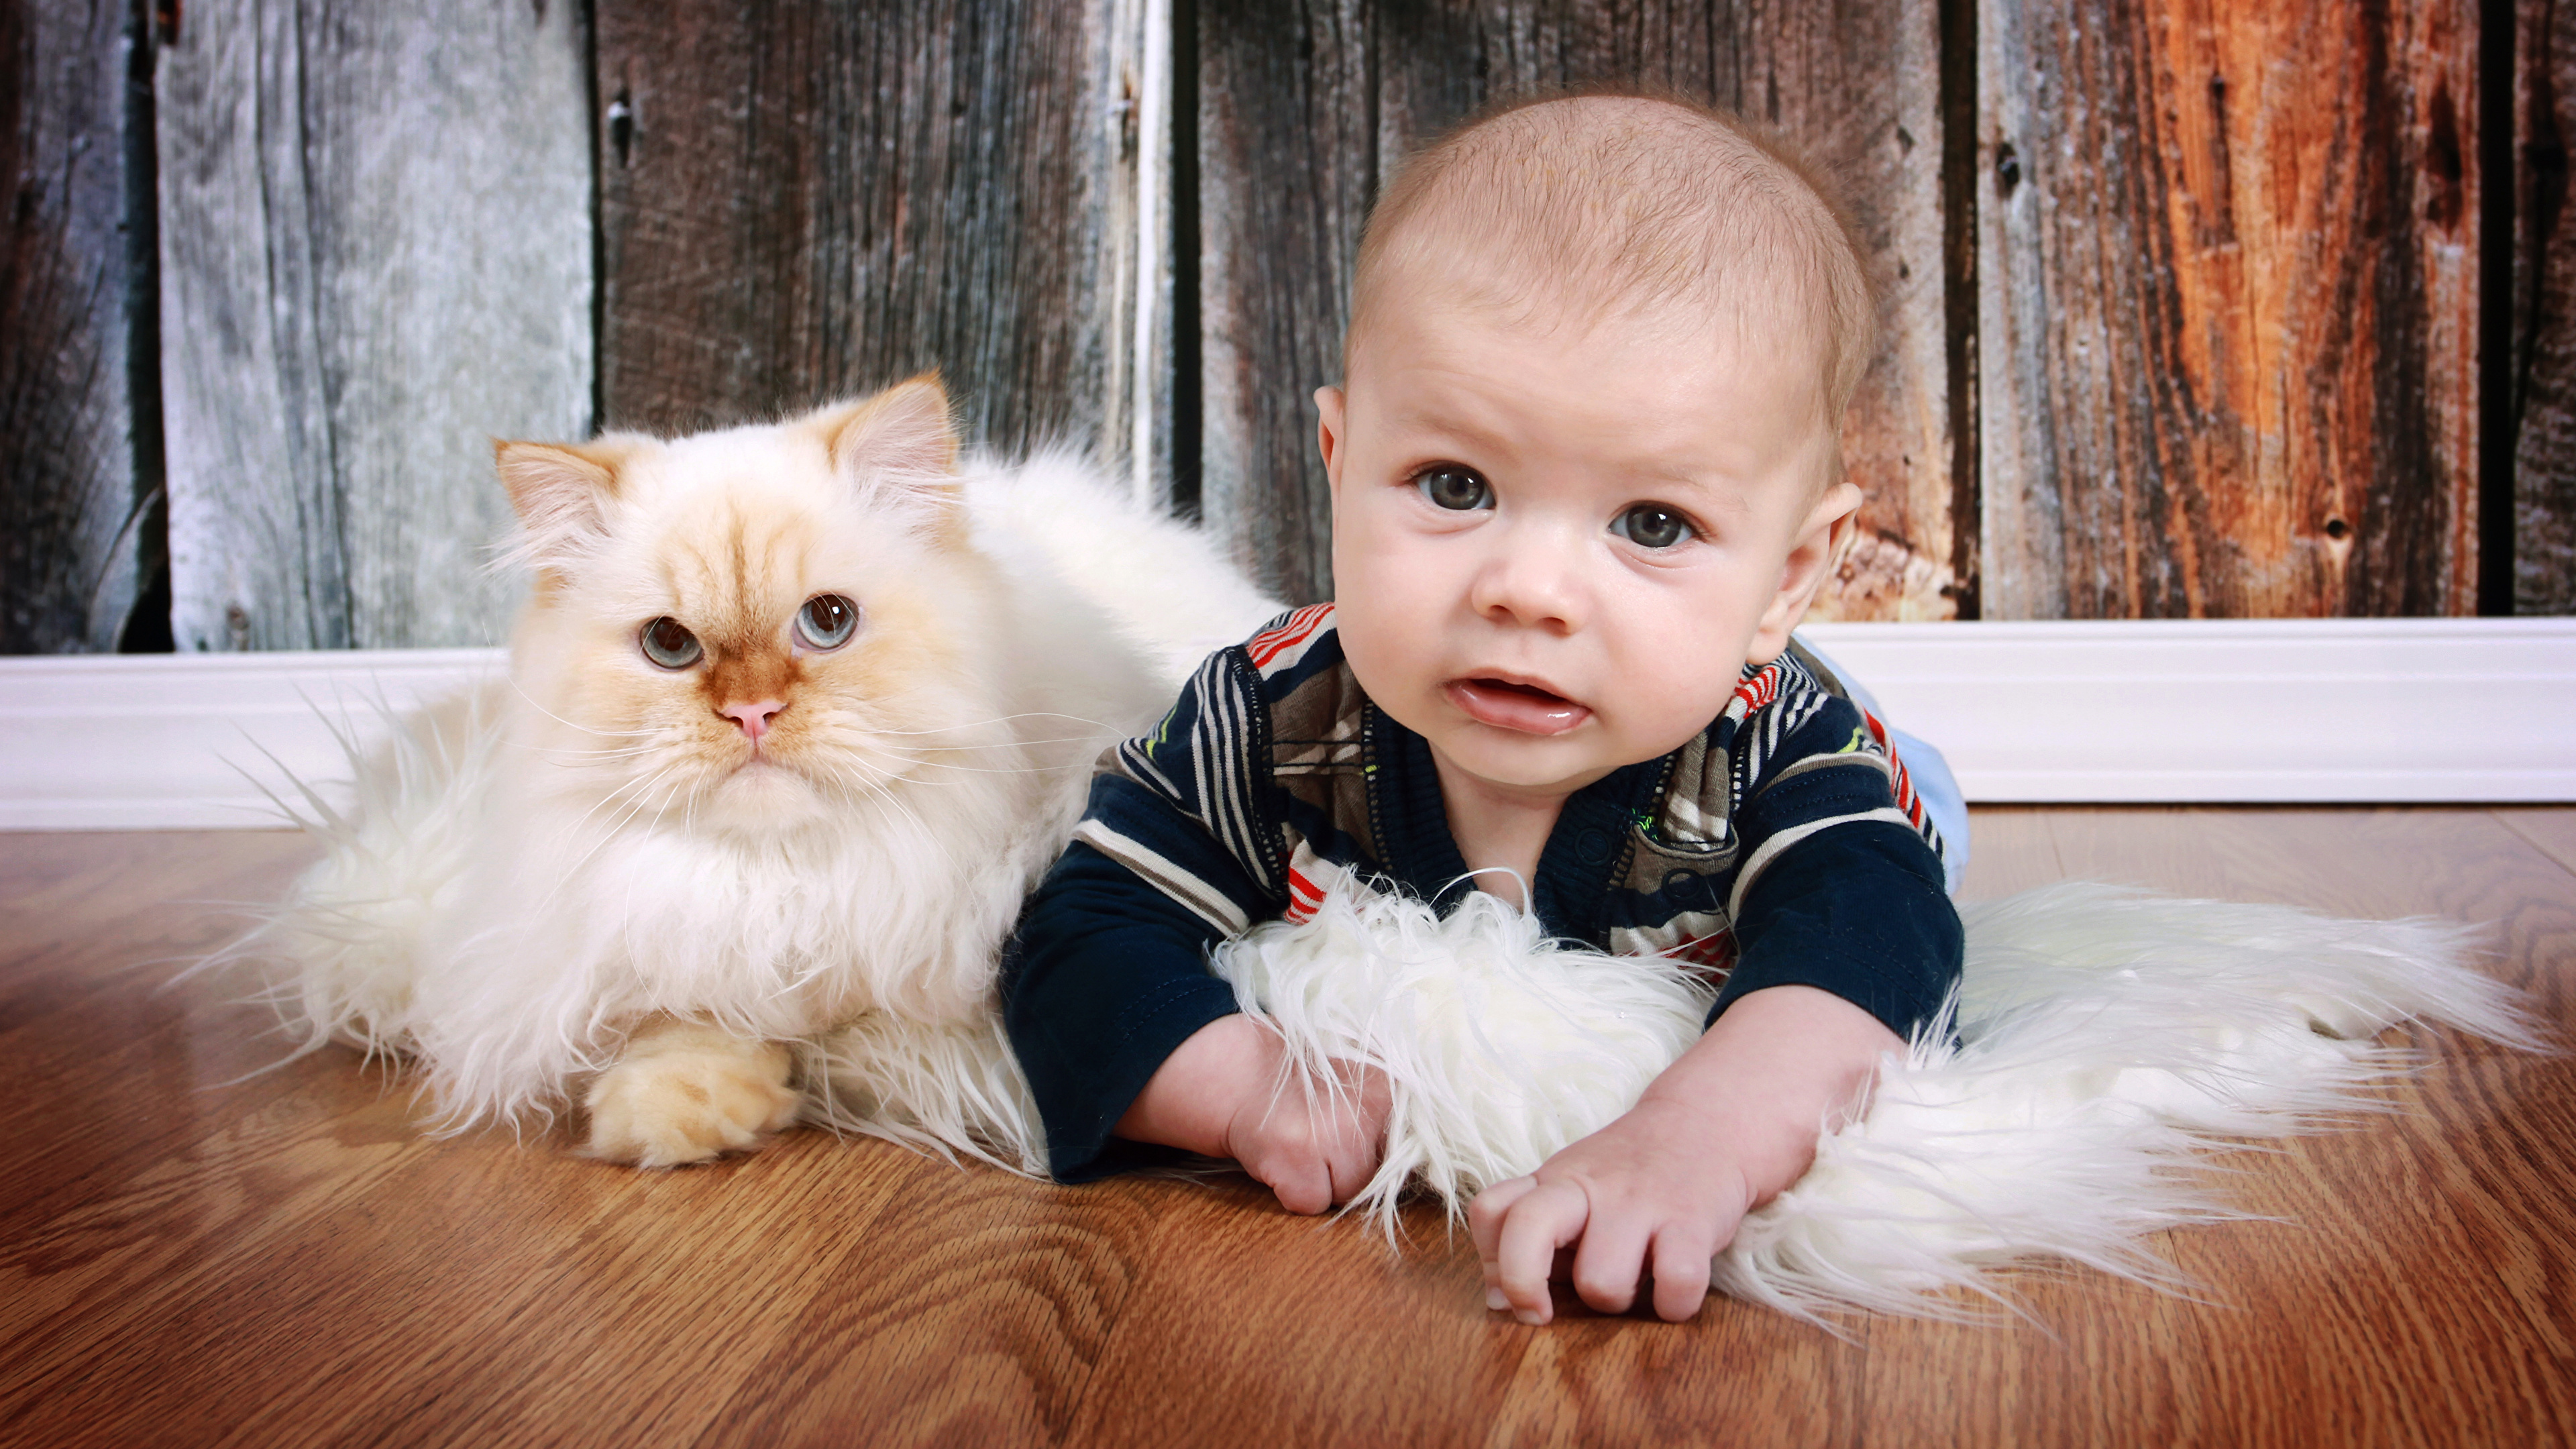 壁紙 3840x2160 飼い猫 赤ちゃん 凝視 子供 動物 ダウンロード 写真